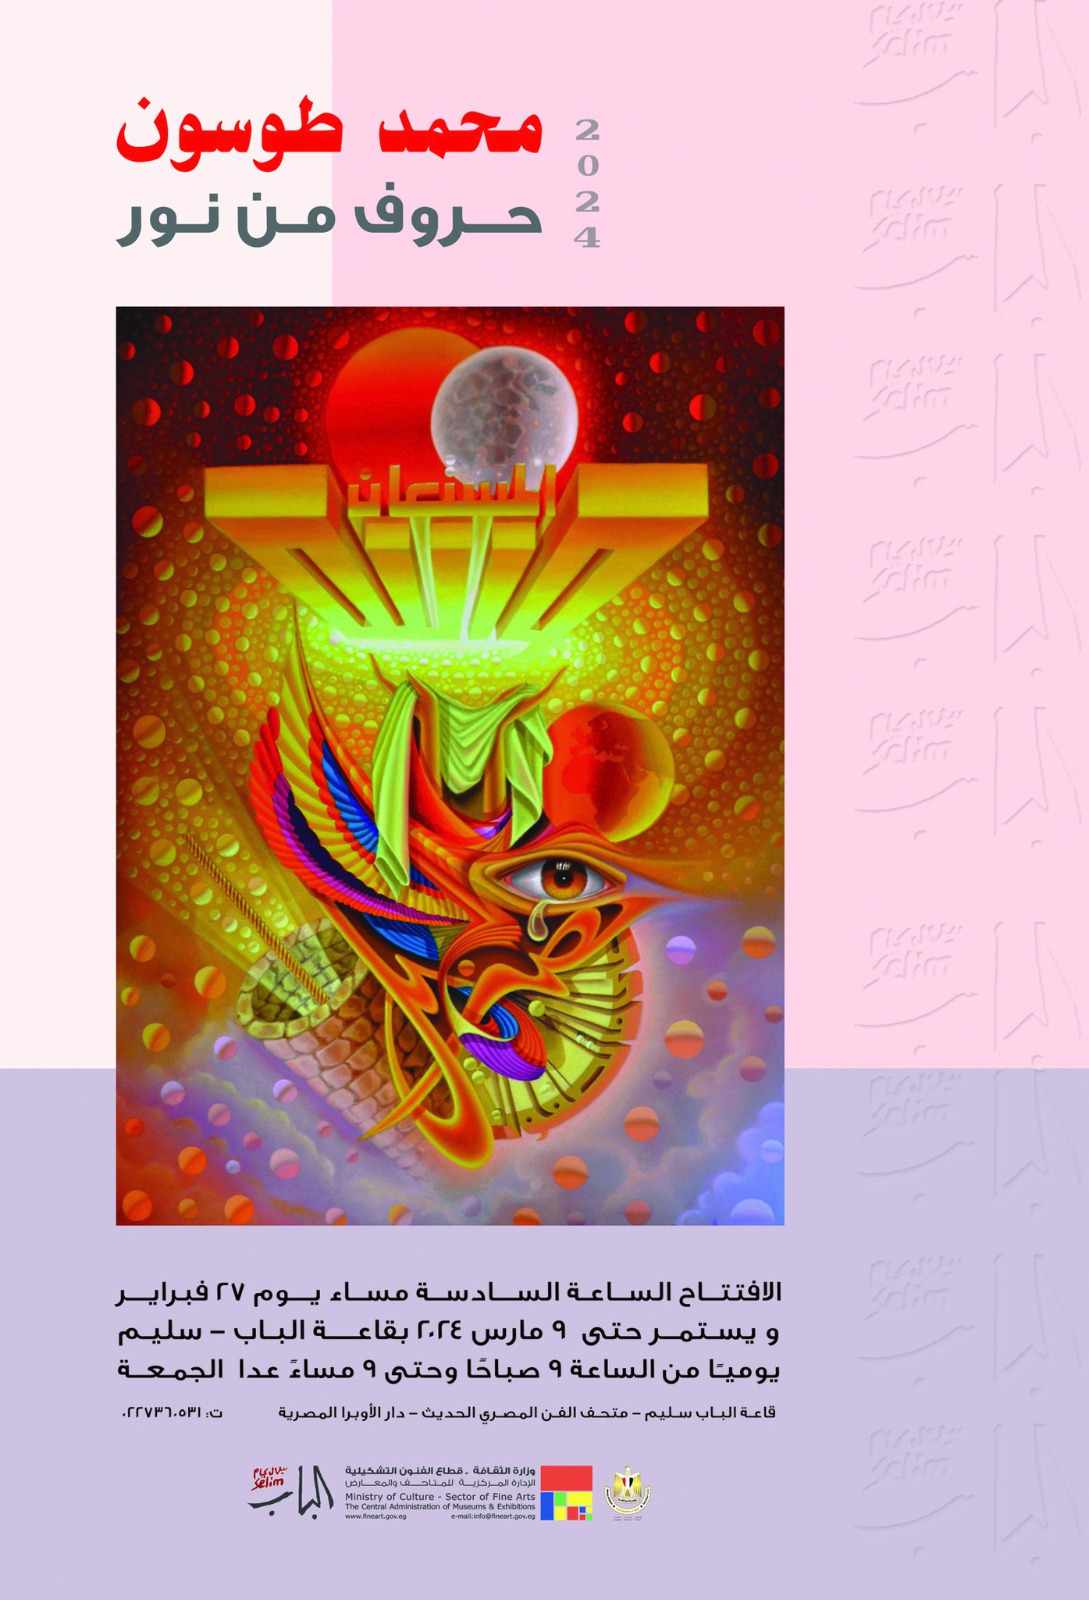  انطلاق معرض   حروف من نور   للفنان محمد طوسون بقاعة الباب